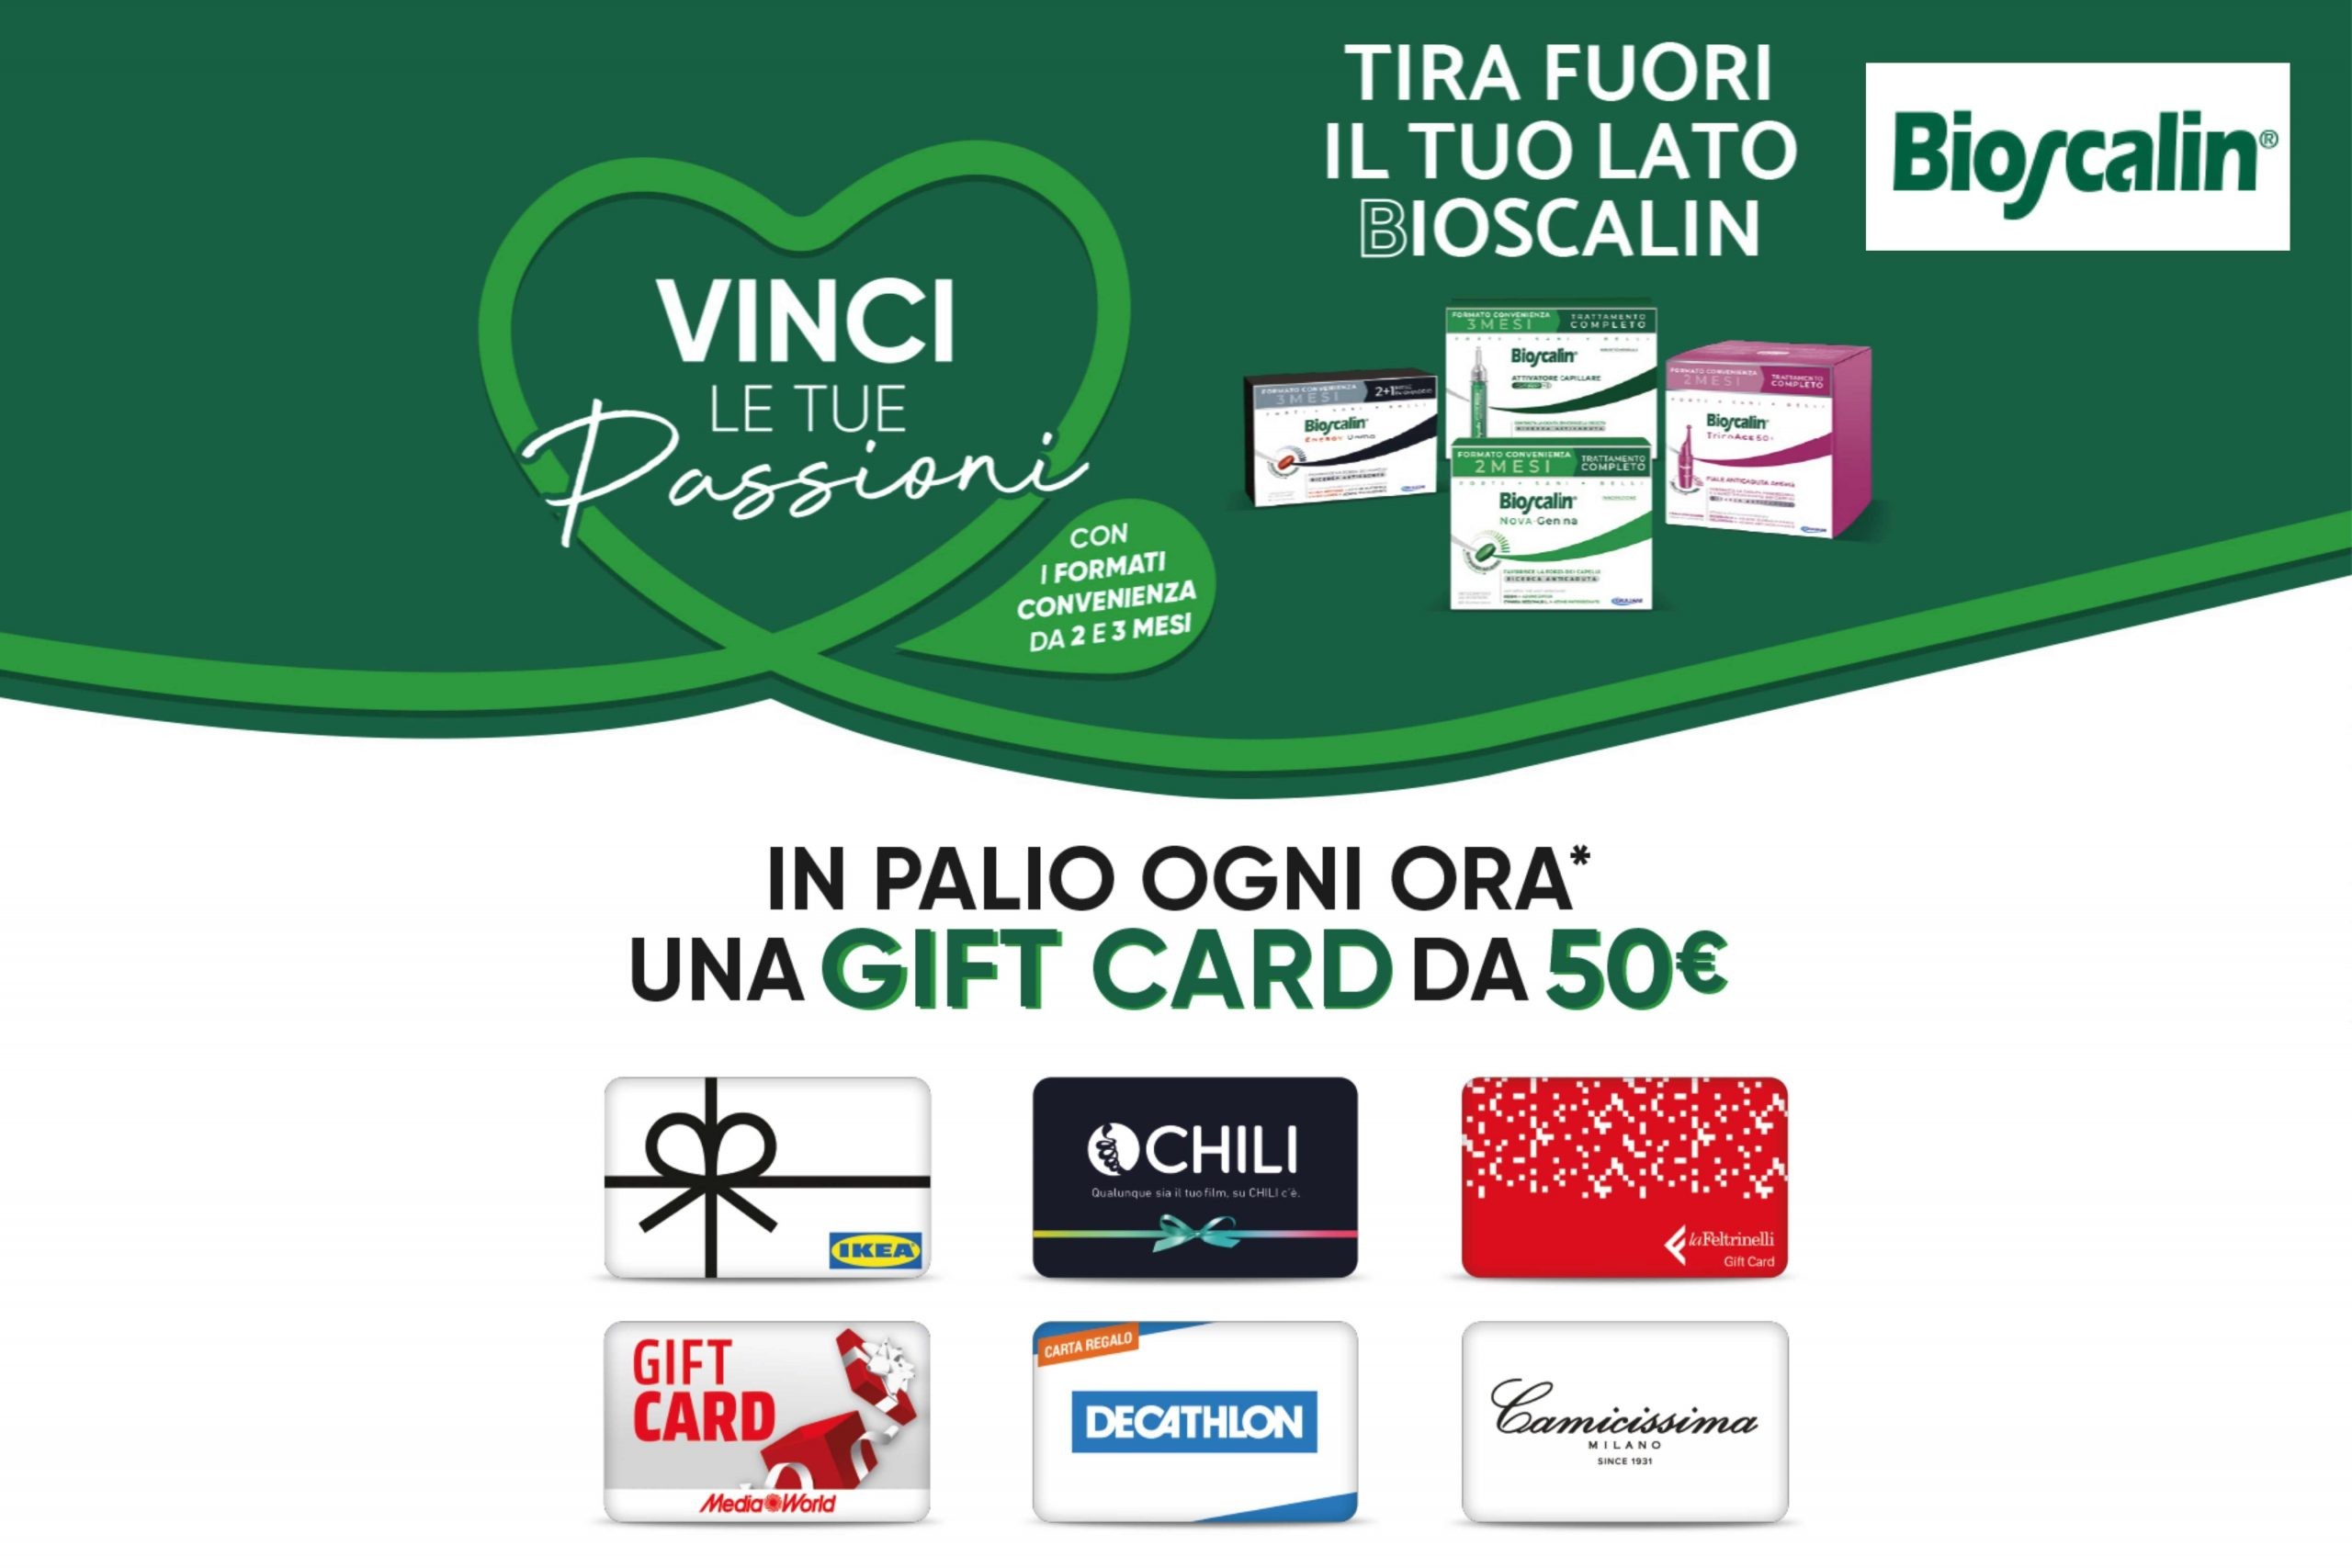 Concorso Bioscalin Vinci le tue passioni 2022: come vincere una gift card da 50€